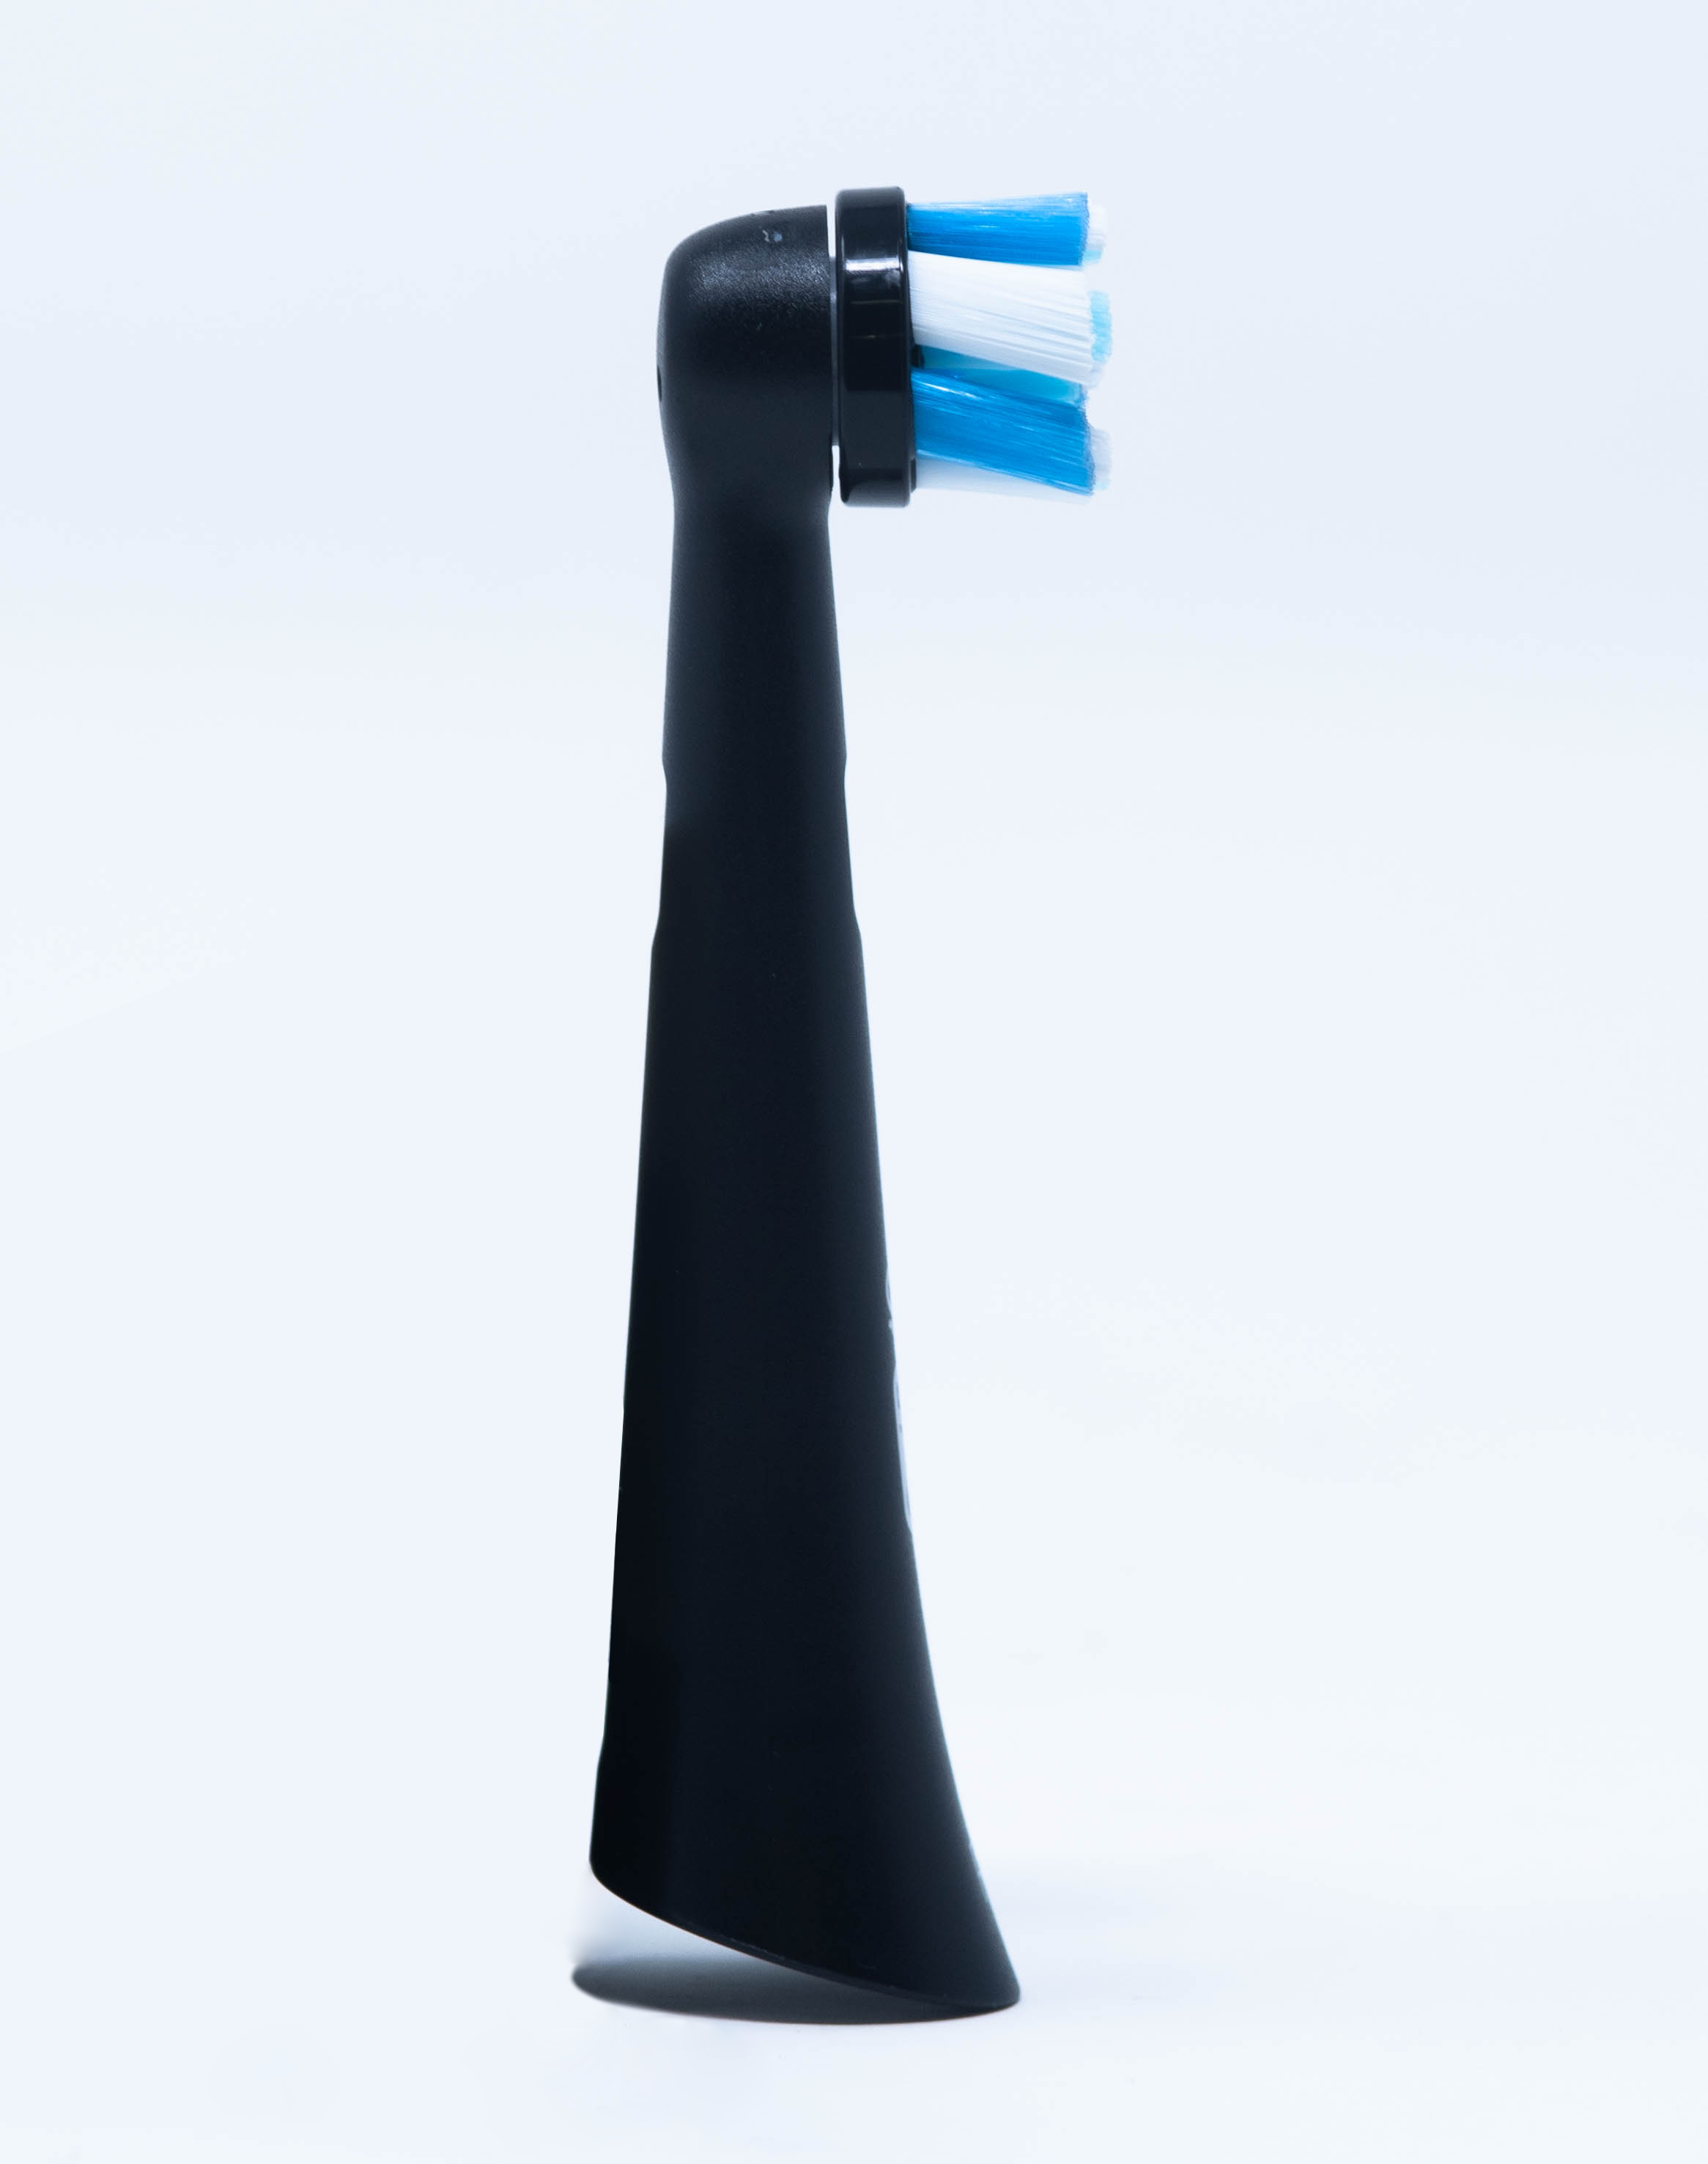 OralB Testina di Ricambio iO Ultimate Clean – 4 pz